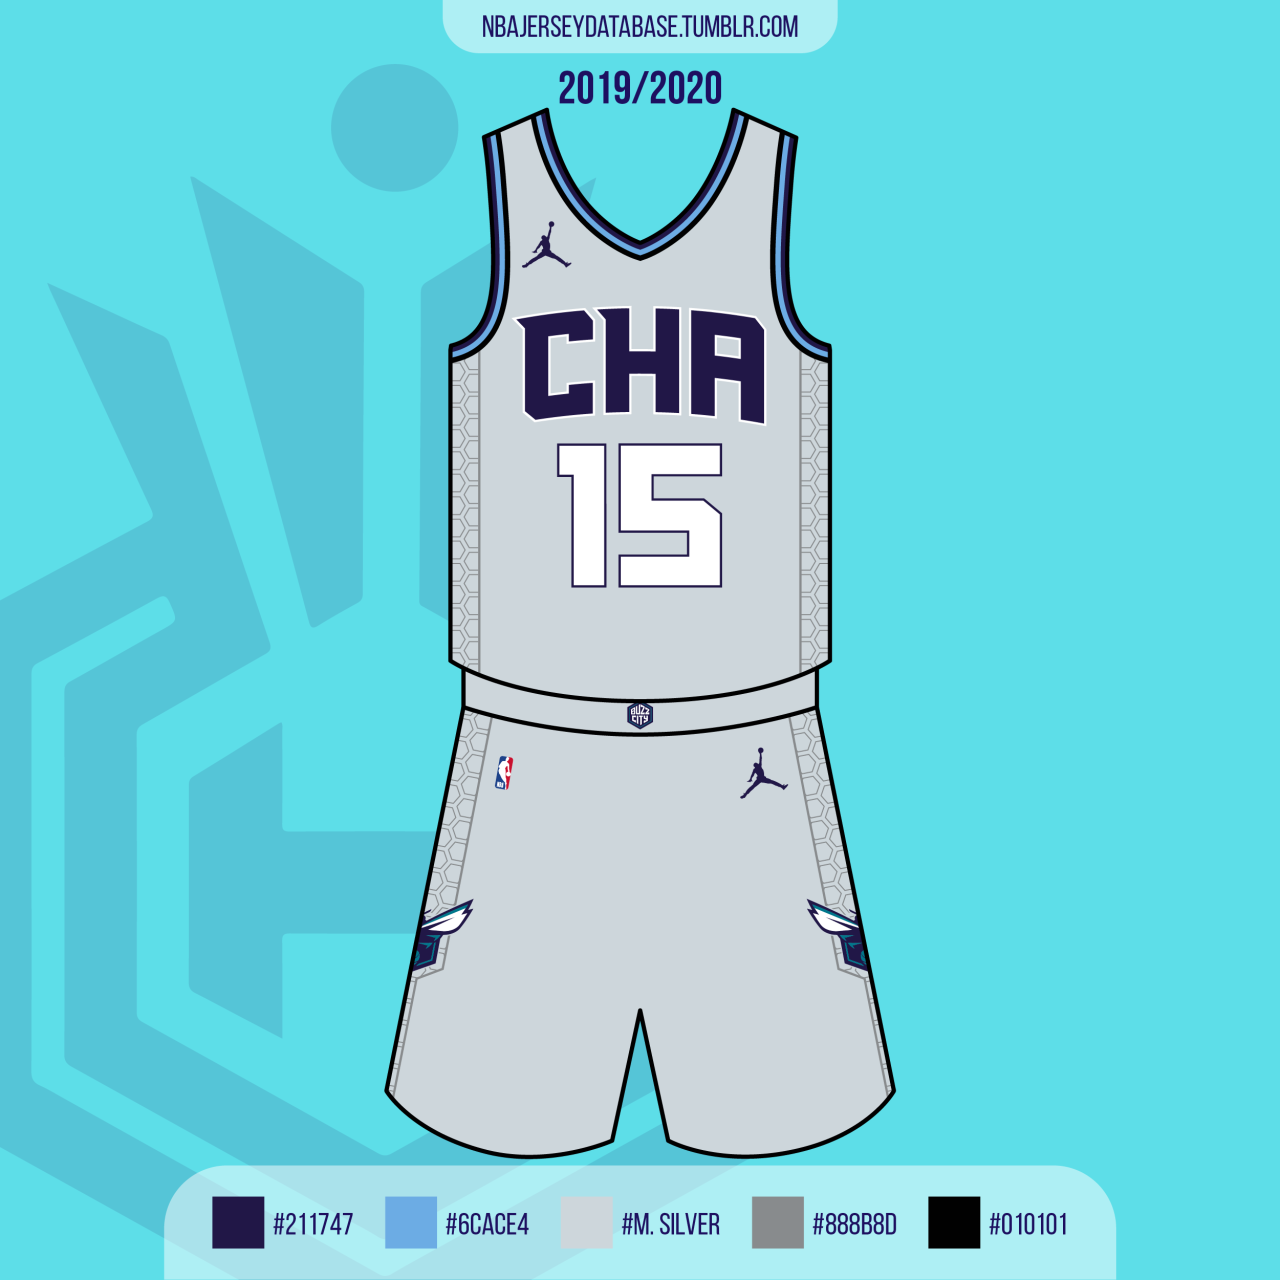 NBA Jersey Database, Charlotte Hornets City Jersey 2021-2022